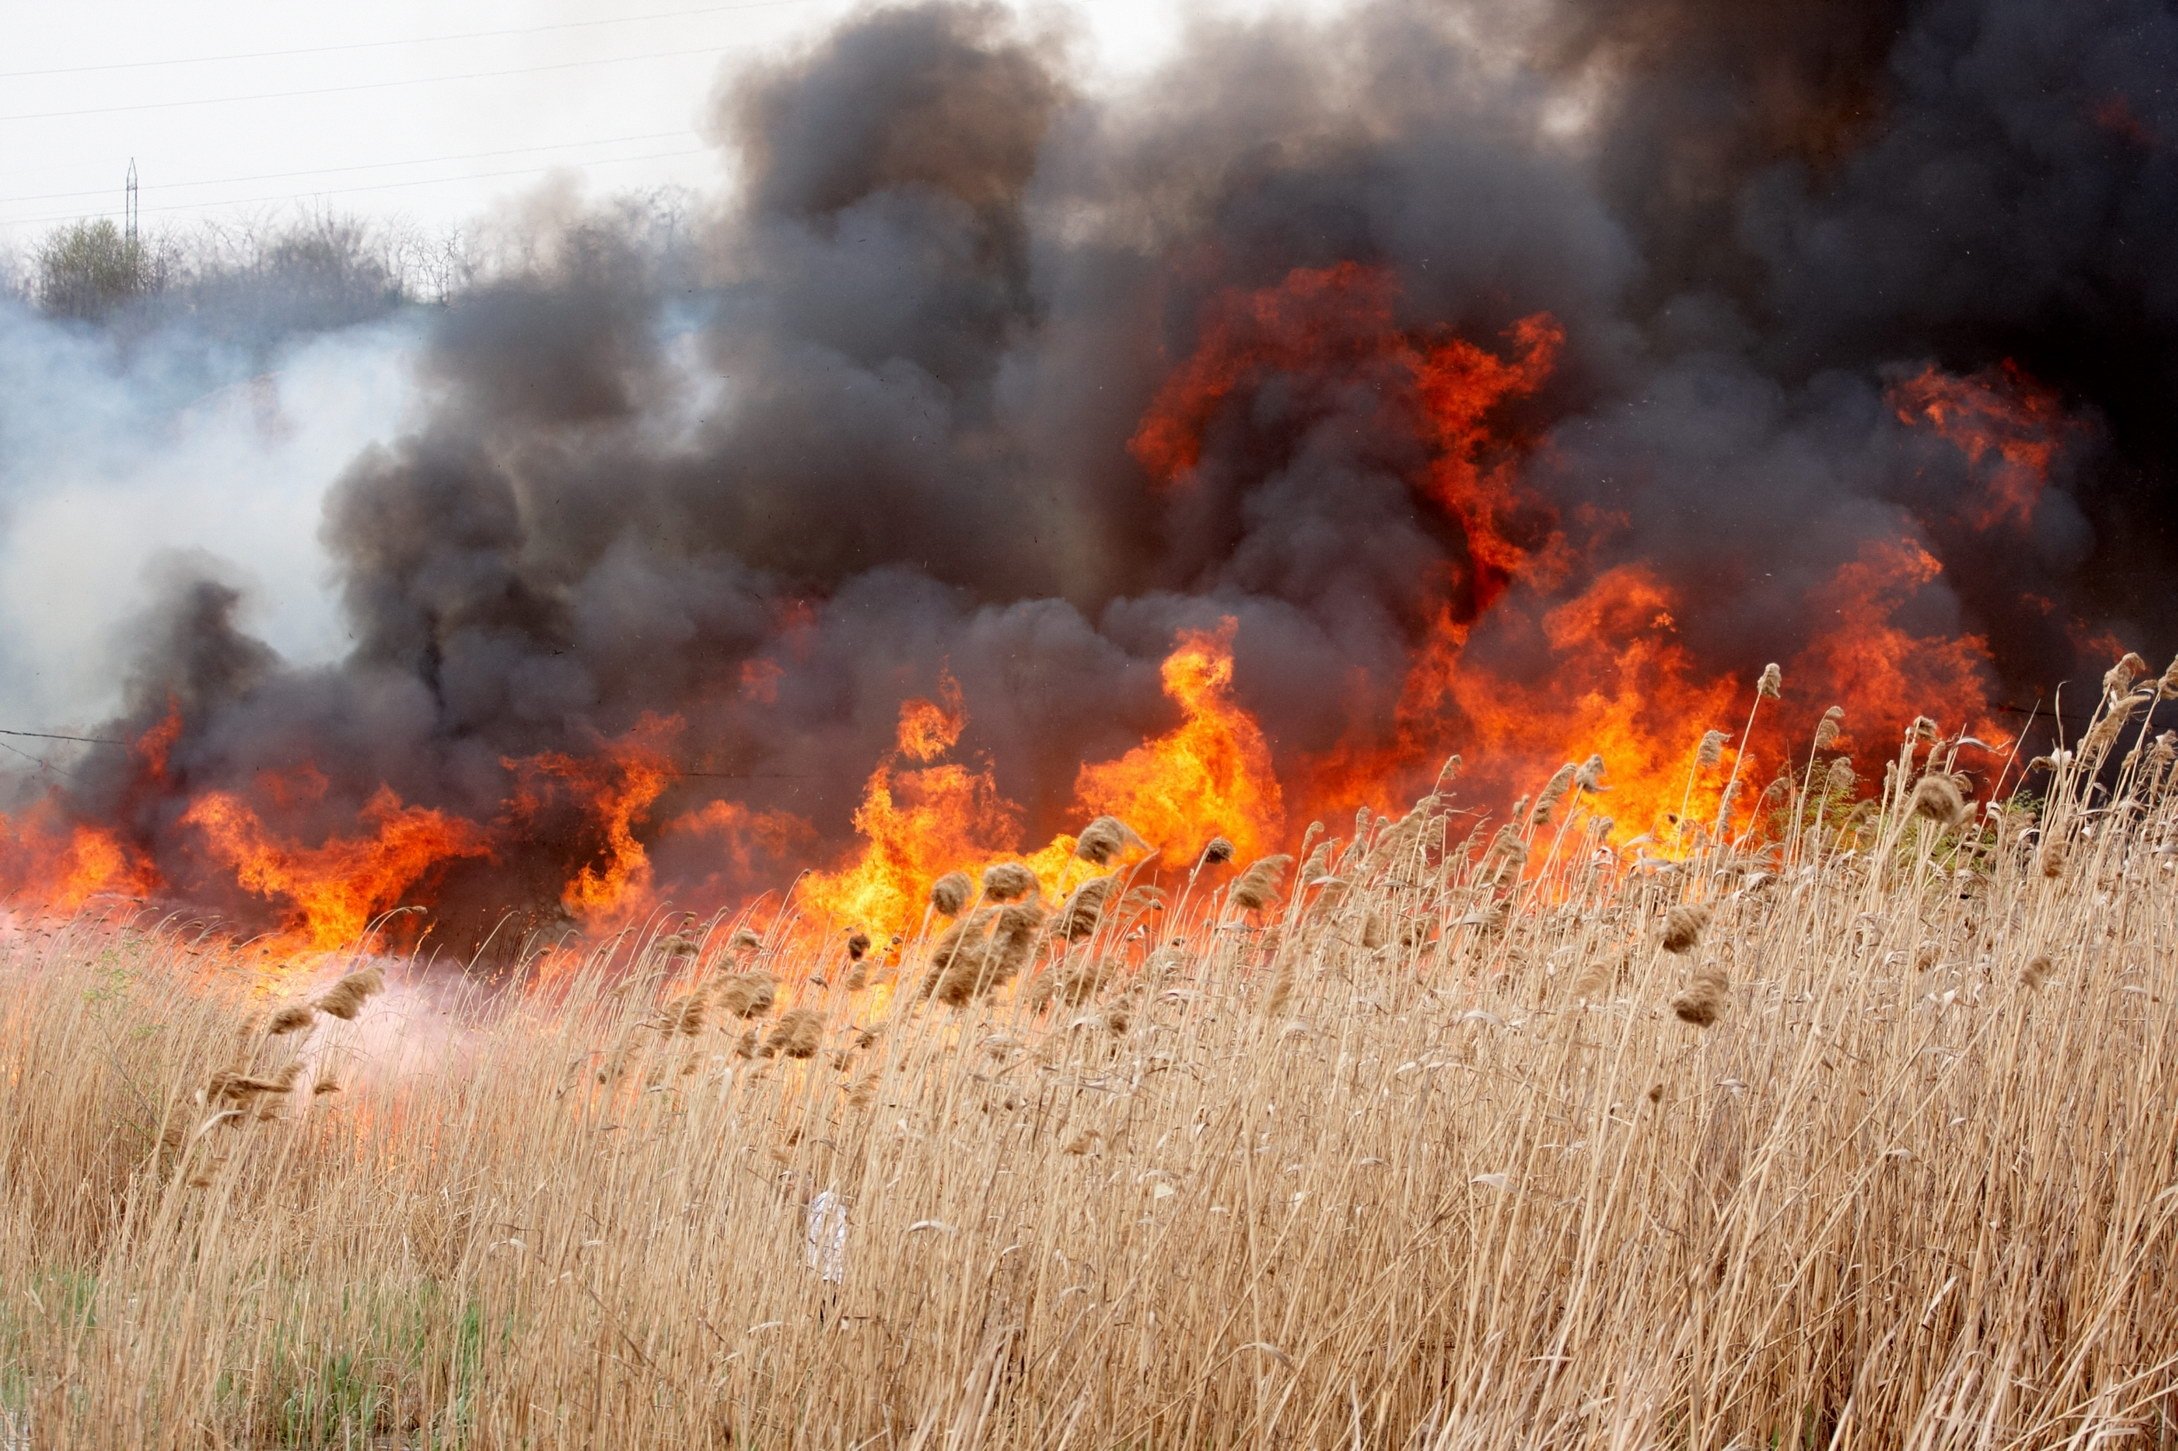  Bărbat descoperit carbonizat după ce pompierii au stins un incendiu de vegetaţie